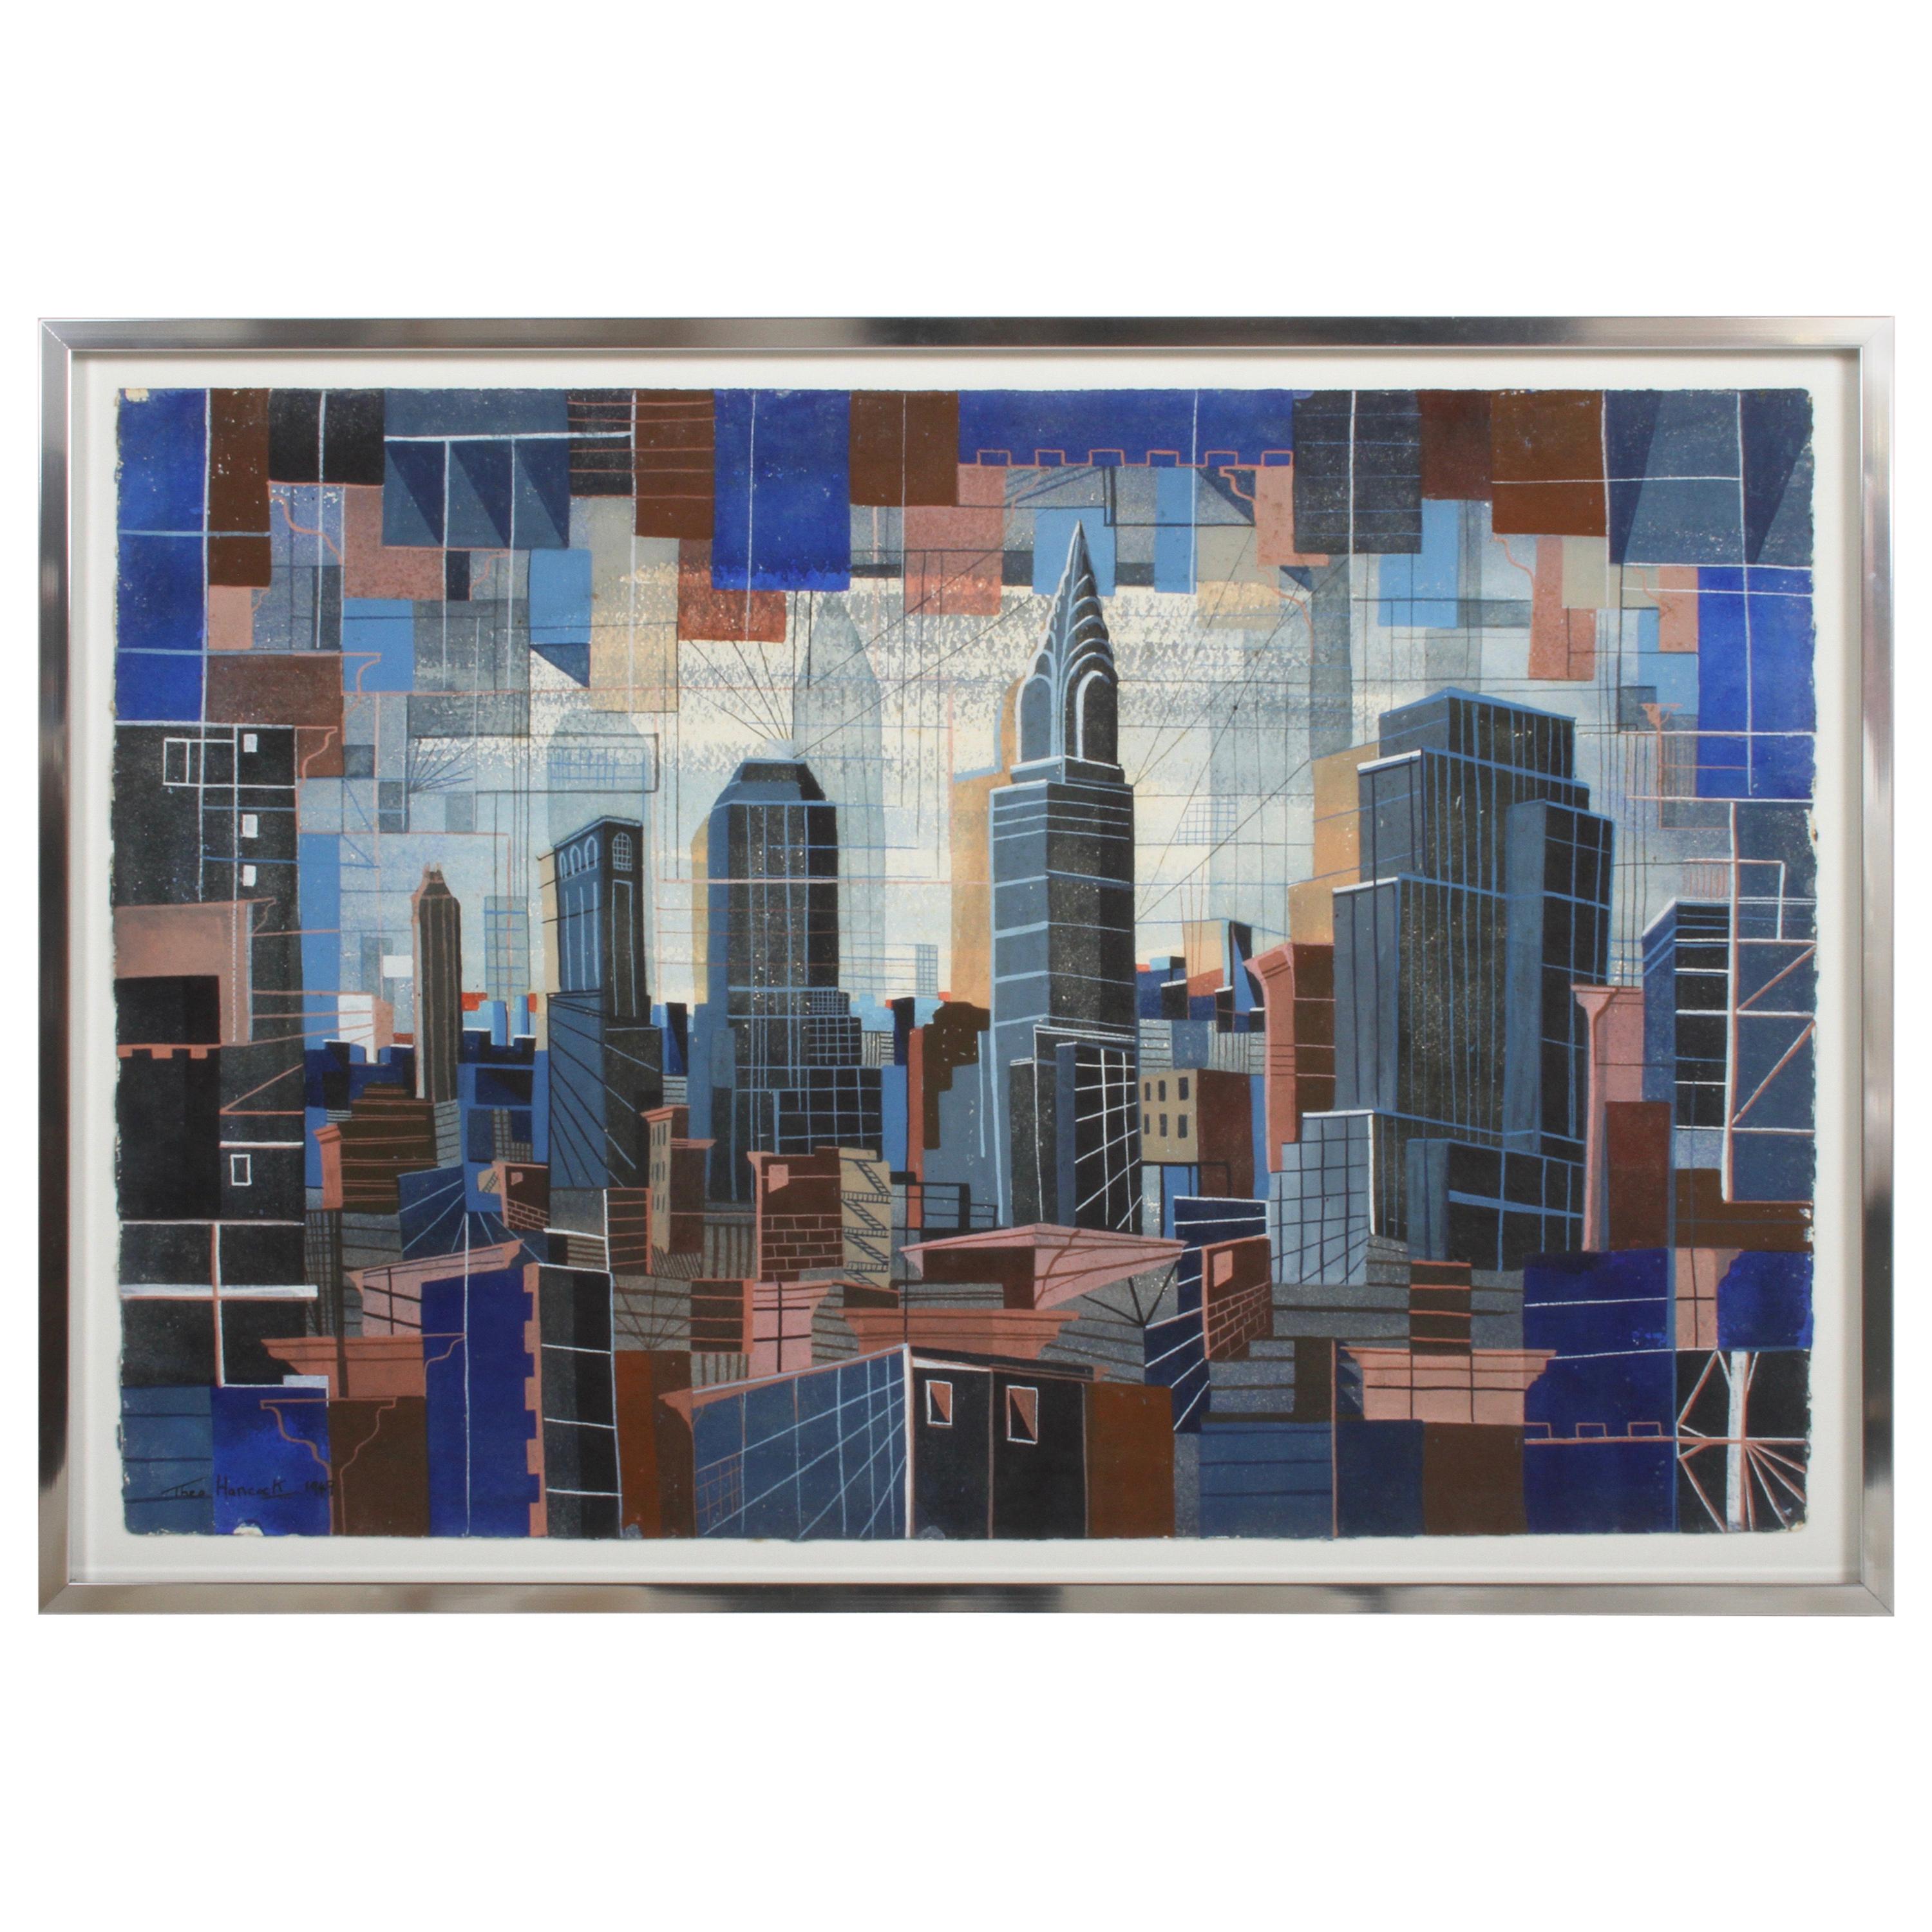 Kubistisches Kunstgemälde der New Yorker Skyline aus den 1940er Jahren des Künstlers Theodore Hancock